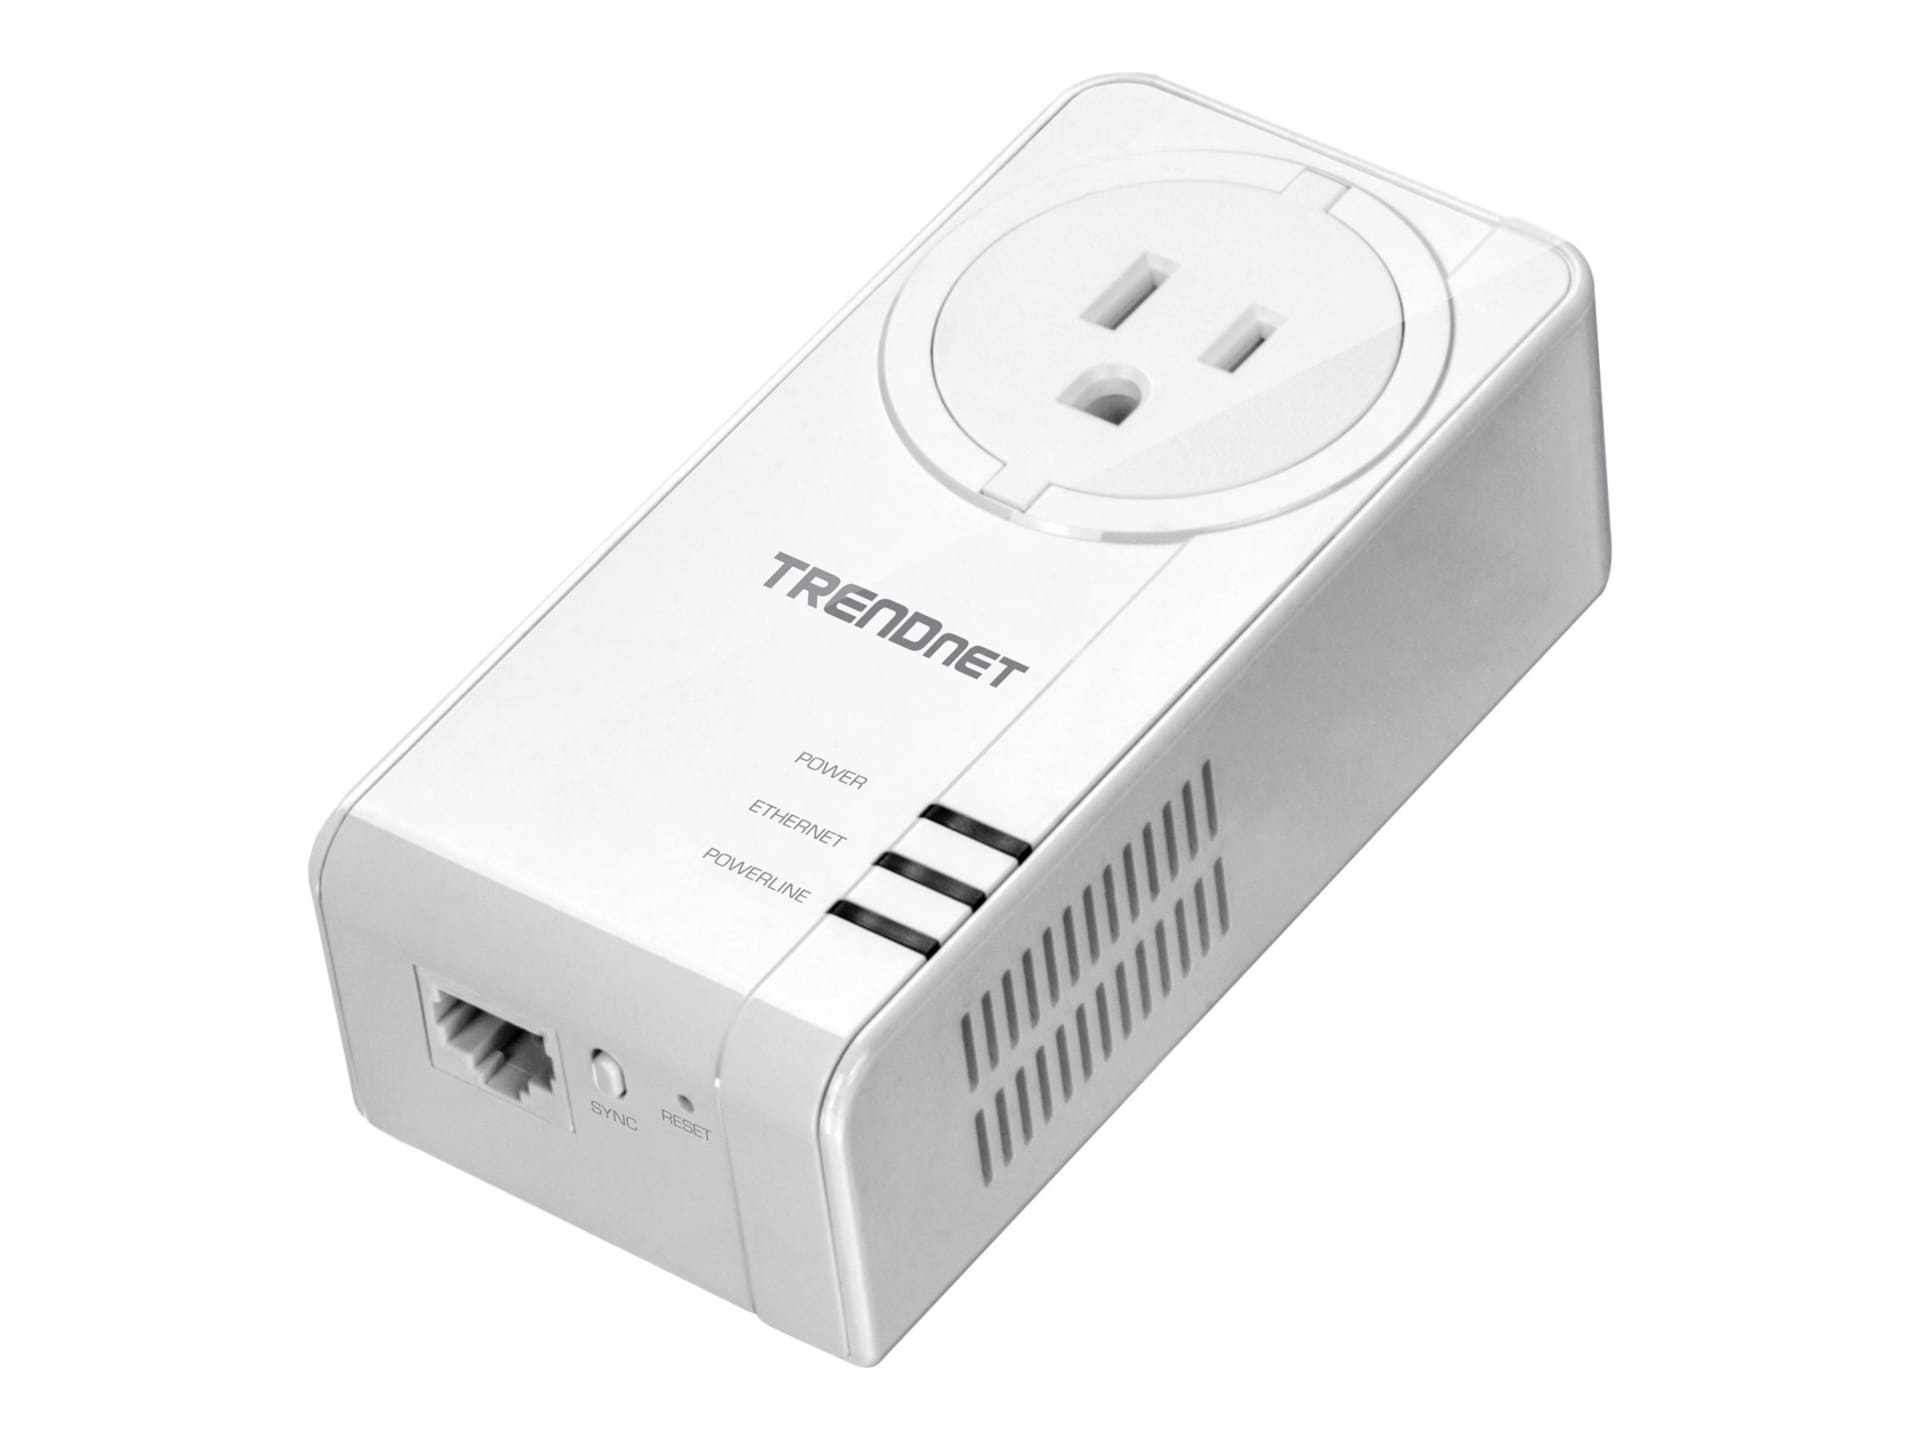 TRENDnet Powerline 1300 AV2 Adapter Kit with Built-in Outlet